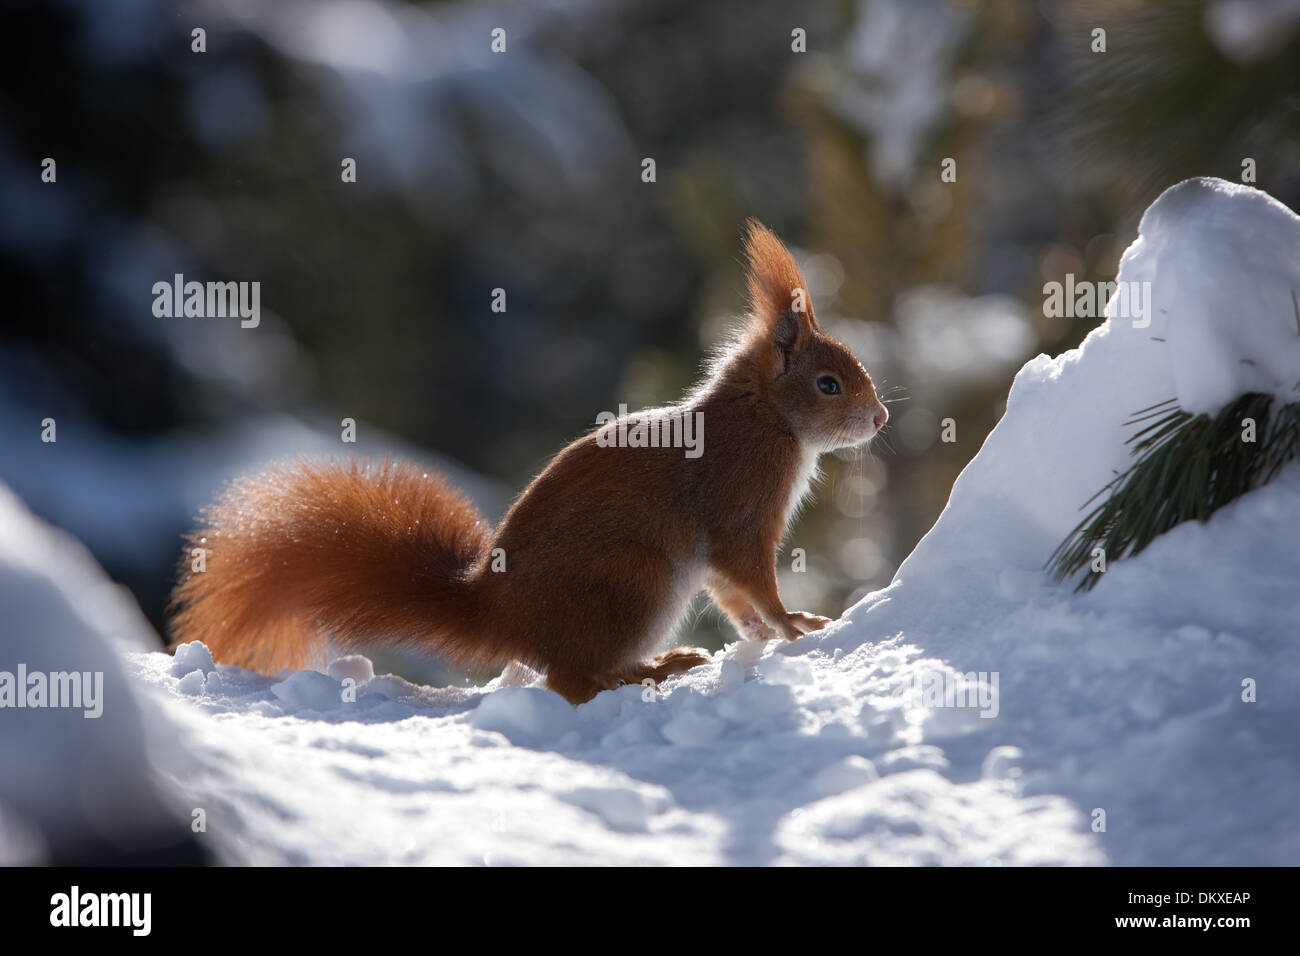 La Svizzera, Europa, animali, animale, pelliccia, lo scoiattolo, inverno, neve Foto Stock